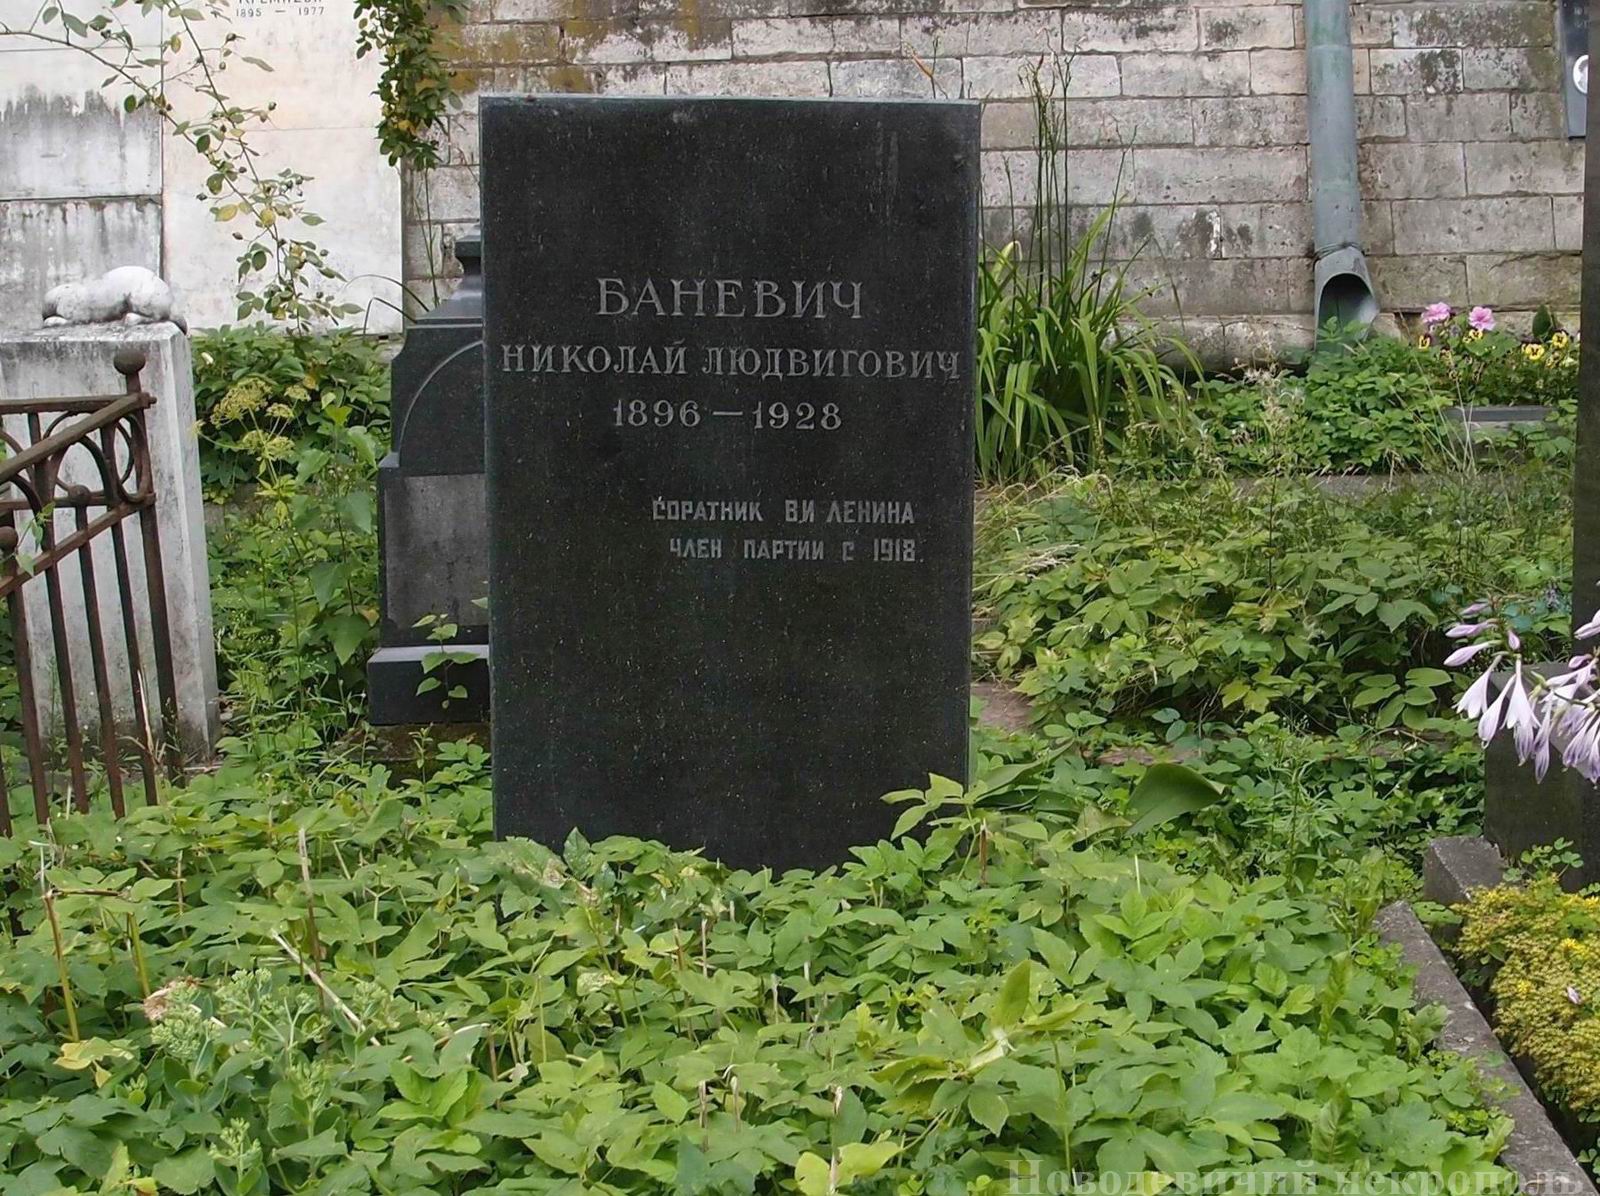 Памятник на могиле Баневича Н.Л. (1896-1928), на Новодевичьем кладбище (1-46-15).